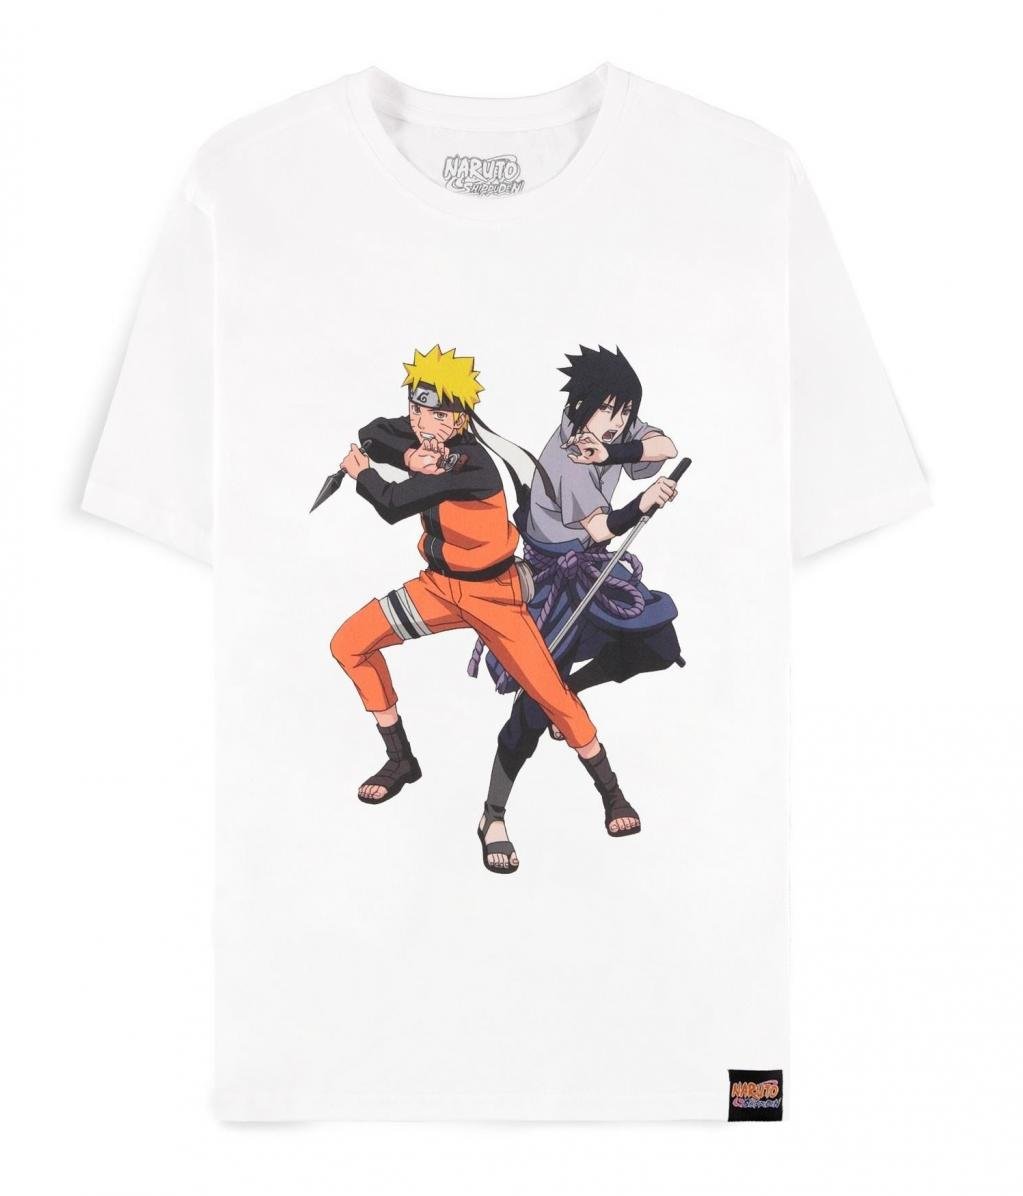 NARUTO SHIPPUDEN - Sasuke & Naruto - Men's T-Shirt (XL)